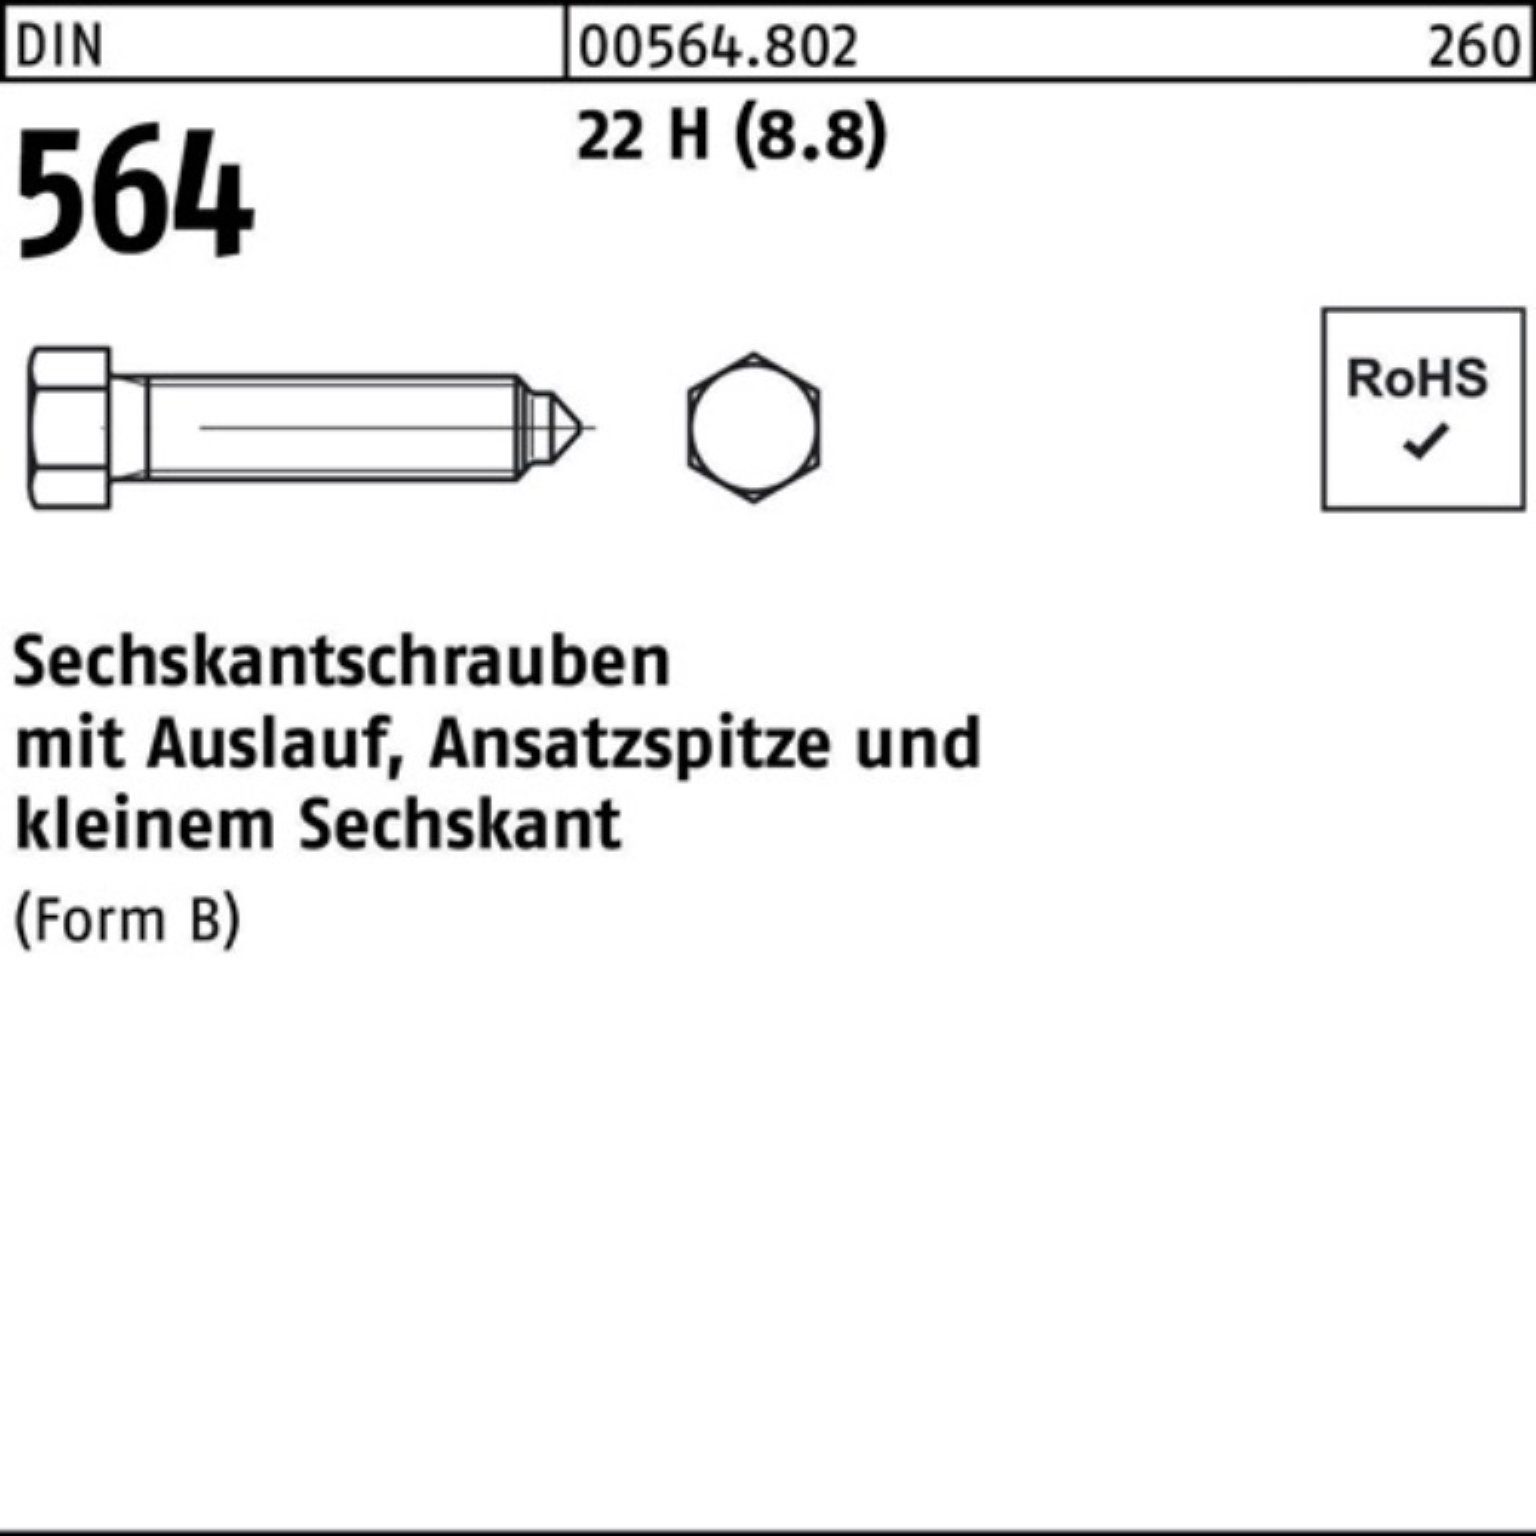 Reyher Sechskantschraube 100er Pack Sechskantschraube DIN 564 Ansatzspitze/Auslauf BM 12x 25 22